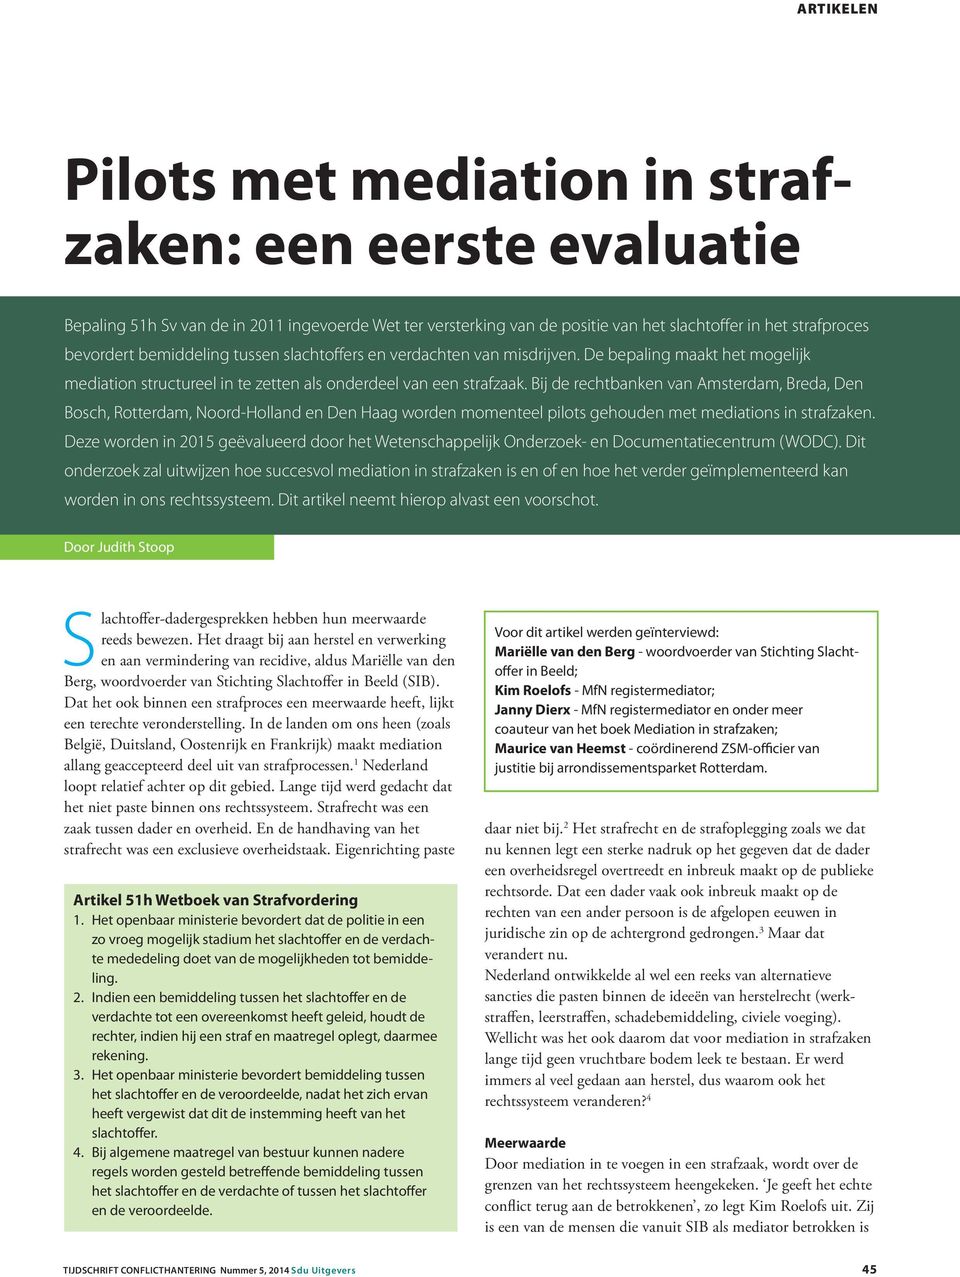 Bij de rechtbanken van Amsterdam, Breda, Den Bosch, Rotterdam, Noord-Holland en Den Haag worden momenteel pilots gehouden met mediations in strafzaken.